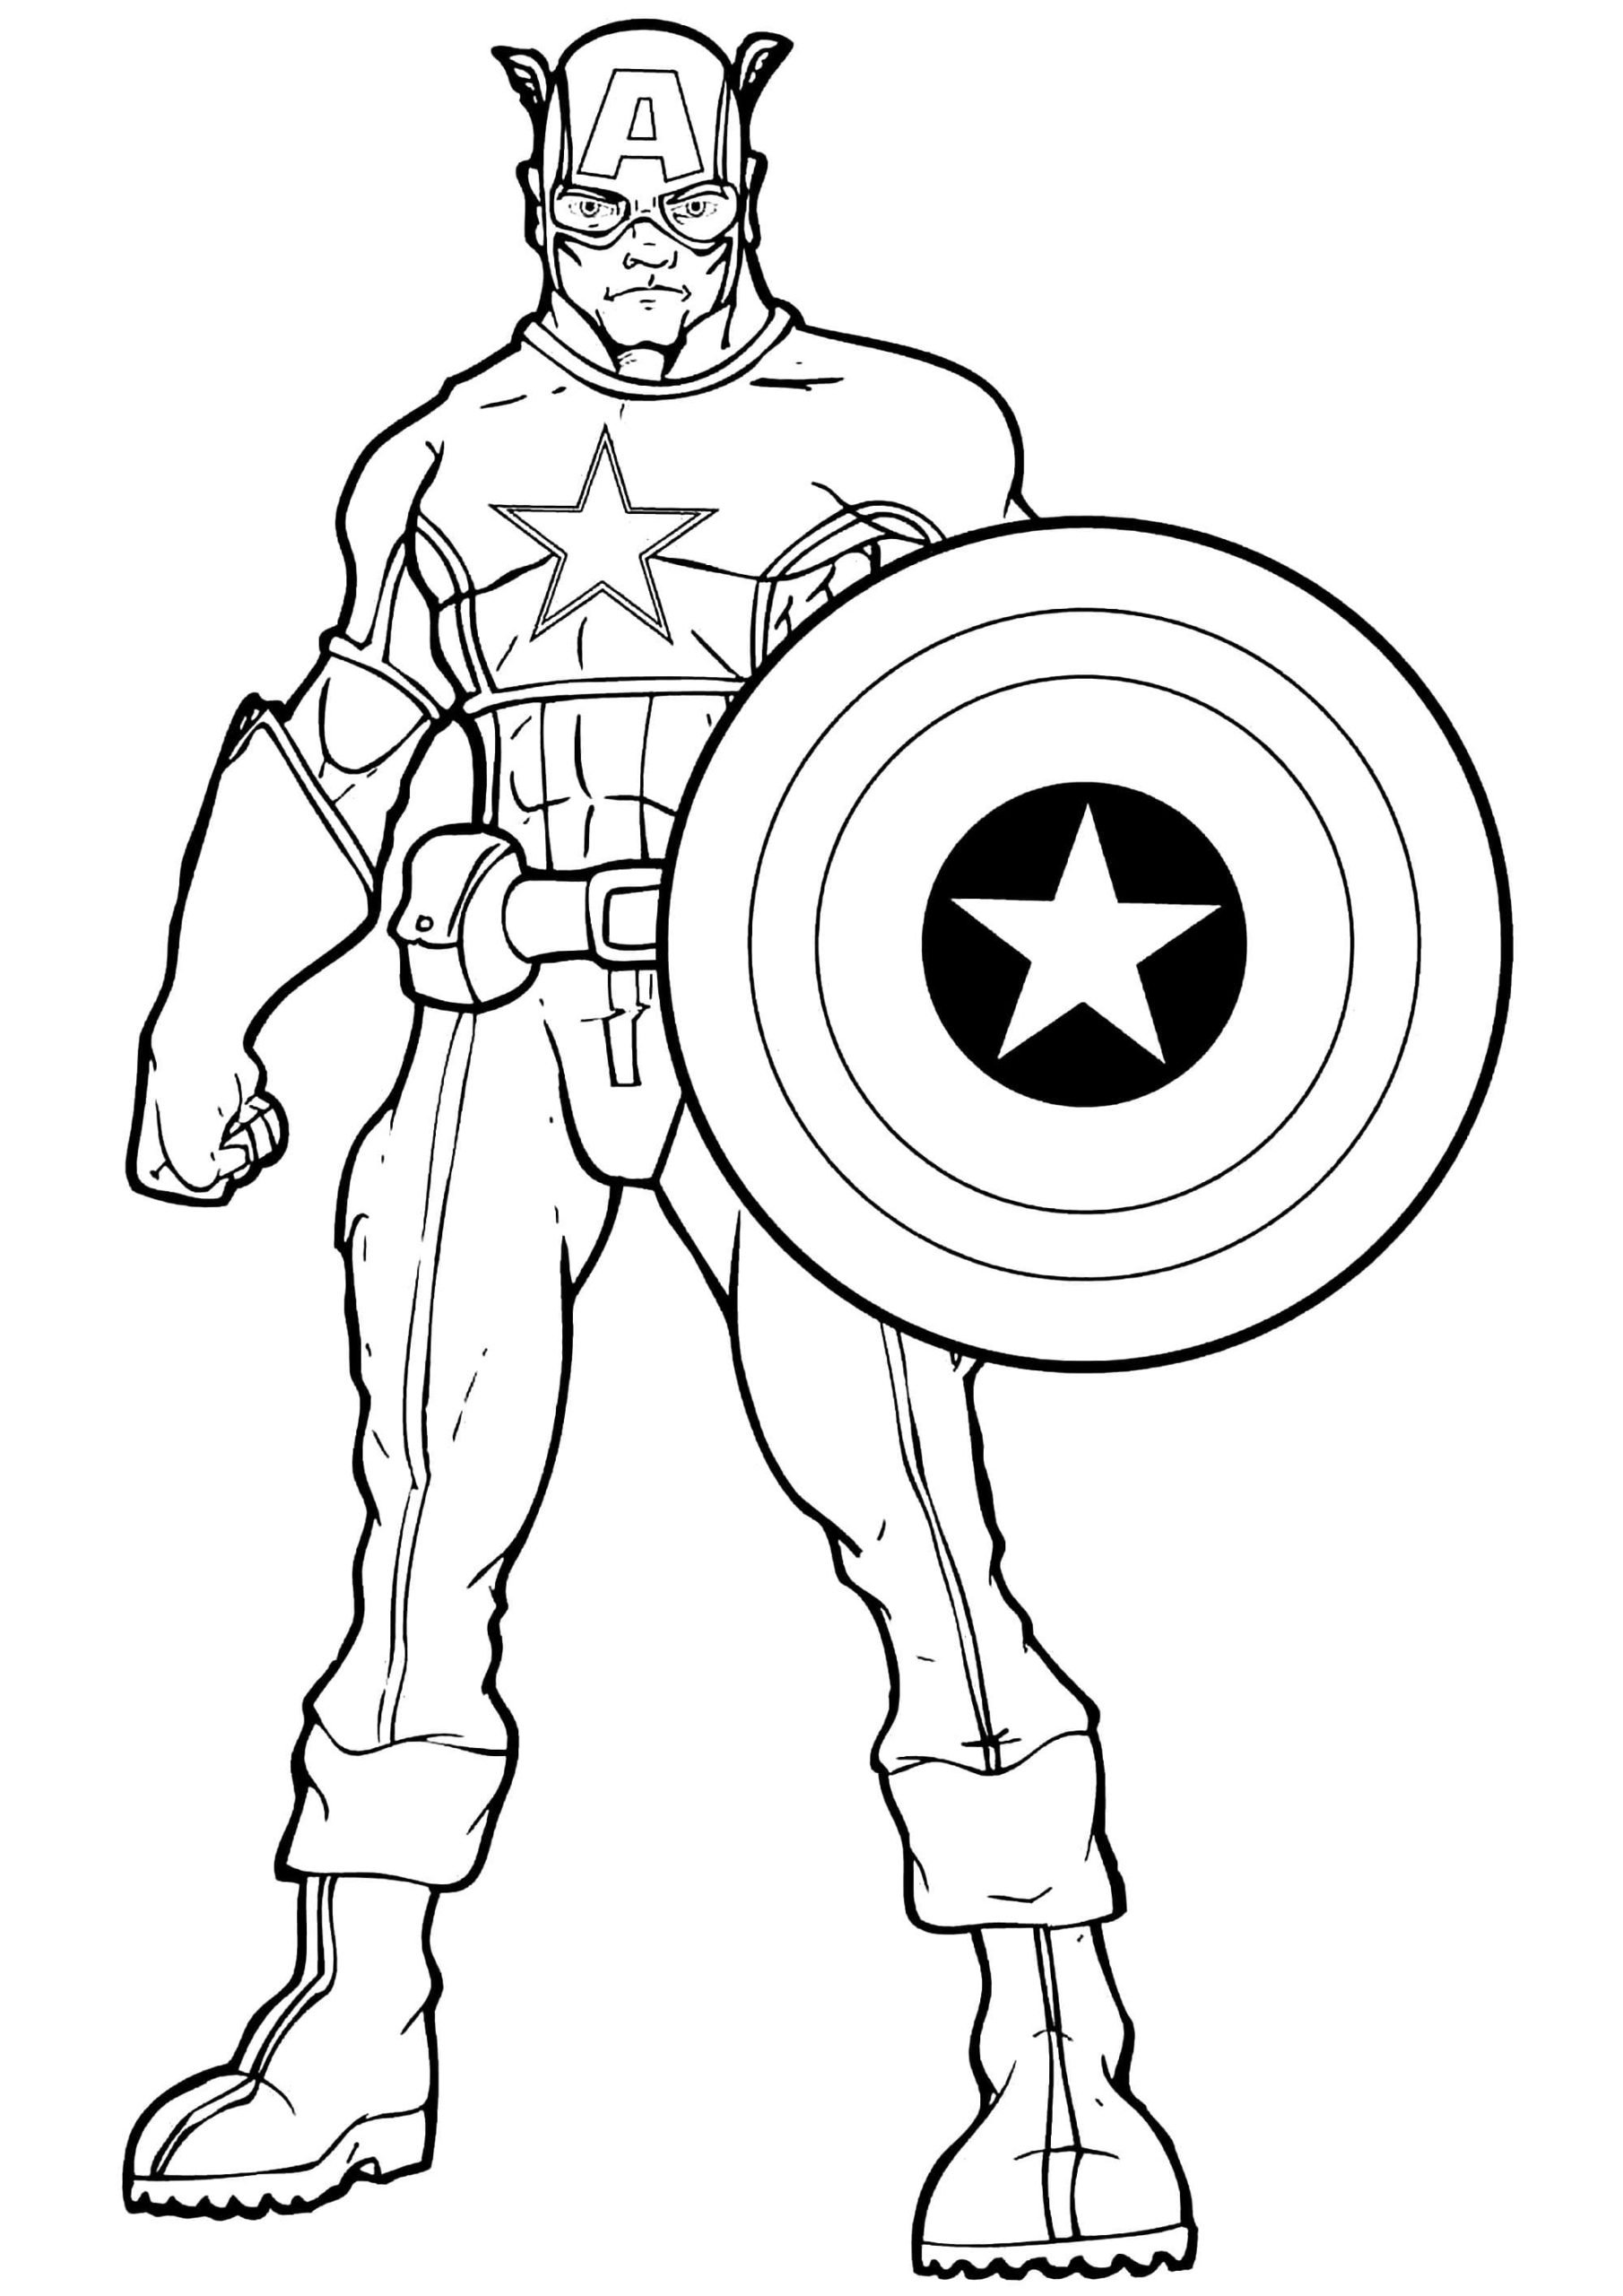 Печатать героев. Герои Марвел Капитан Америка раскраска. Мстители раскраска Капитан Америка. Раскраска Супергерои Марвел Капитан Америка. Мстители раскраска Капитан Марвел.